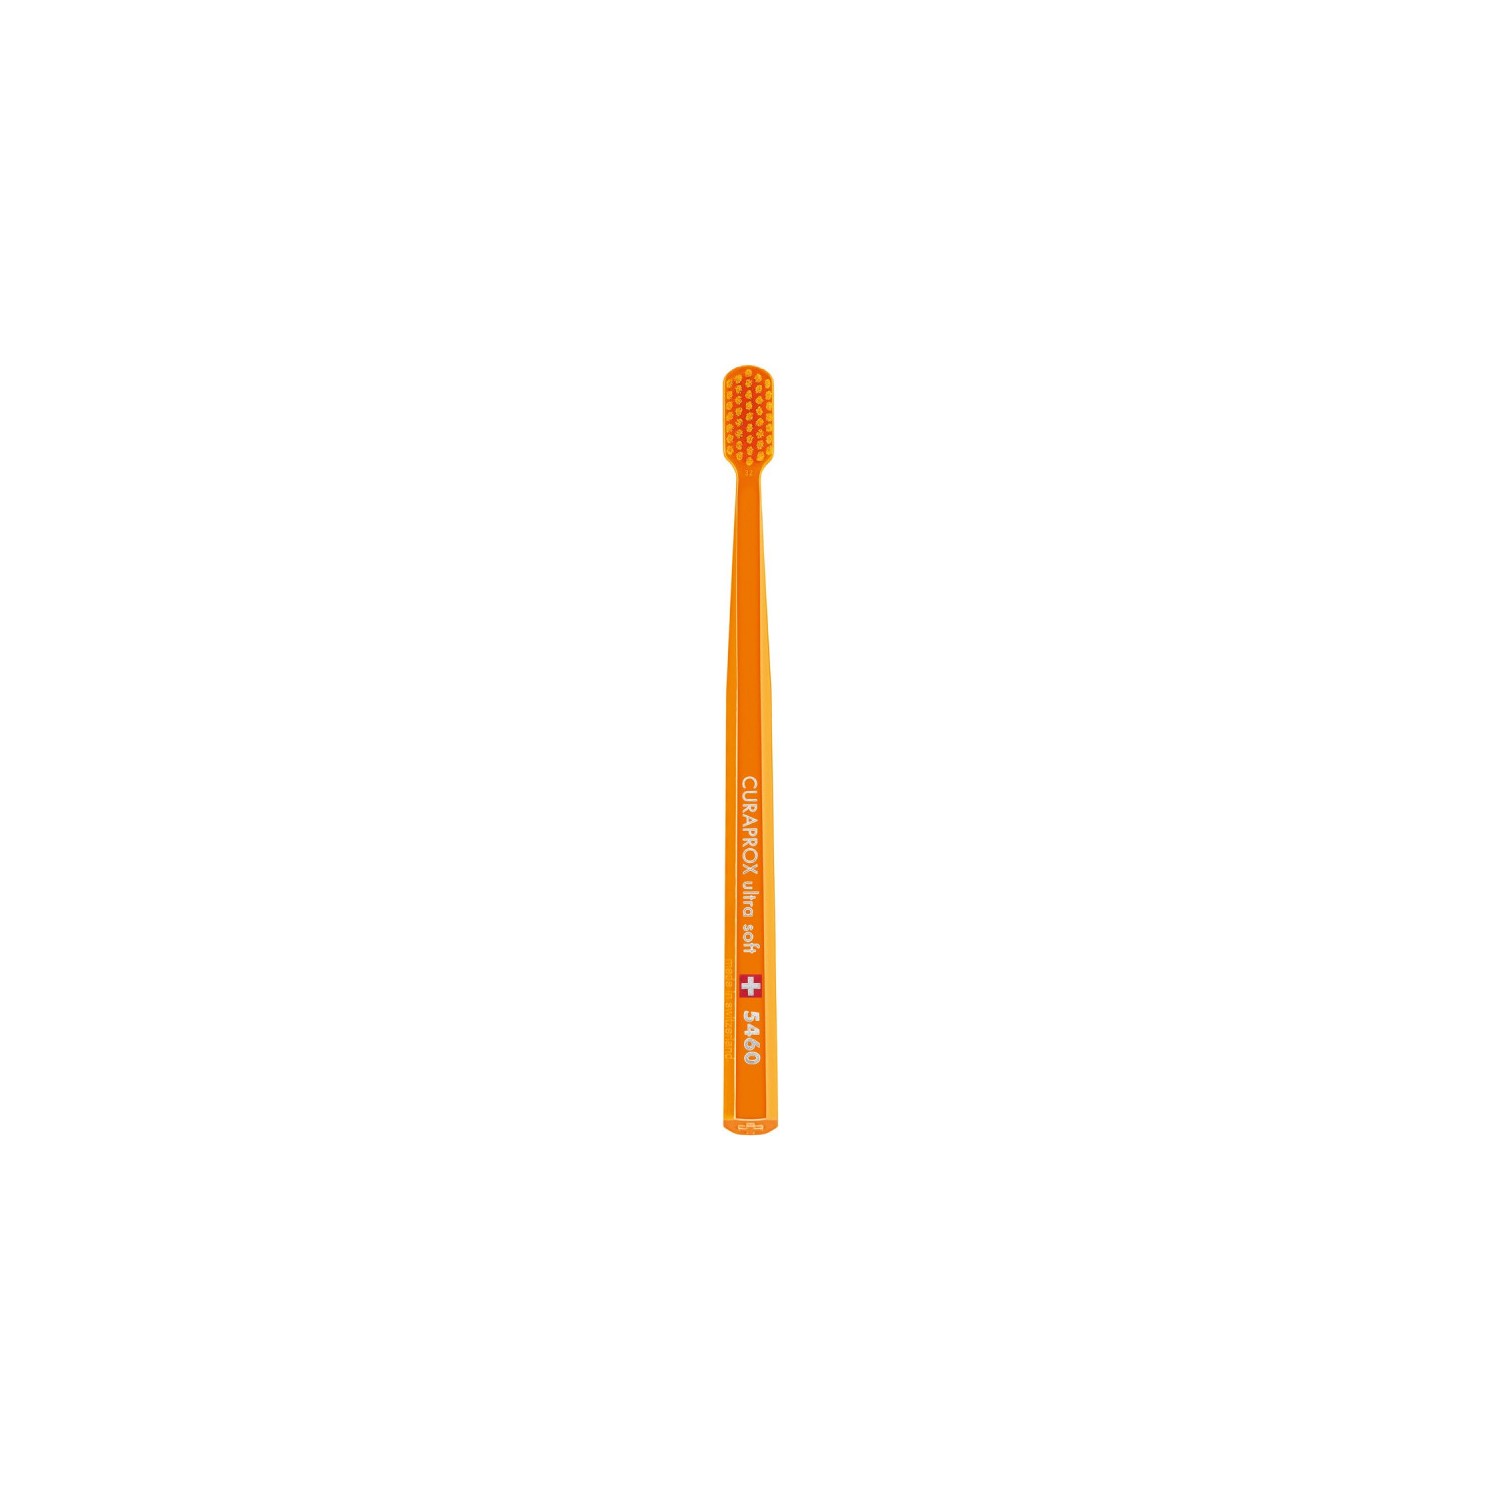 Зубная щетка Curaprox ультрамягкая CS5460, оранжевый household electric toothbrush usb charging soft hair waterproof wave vibration toothbrush